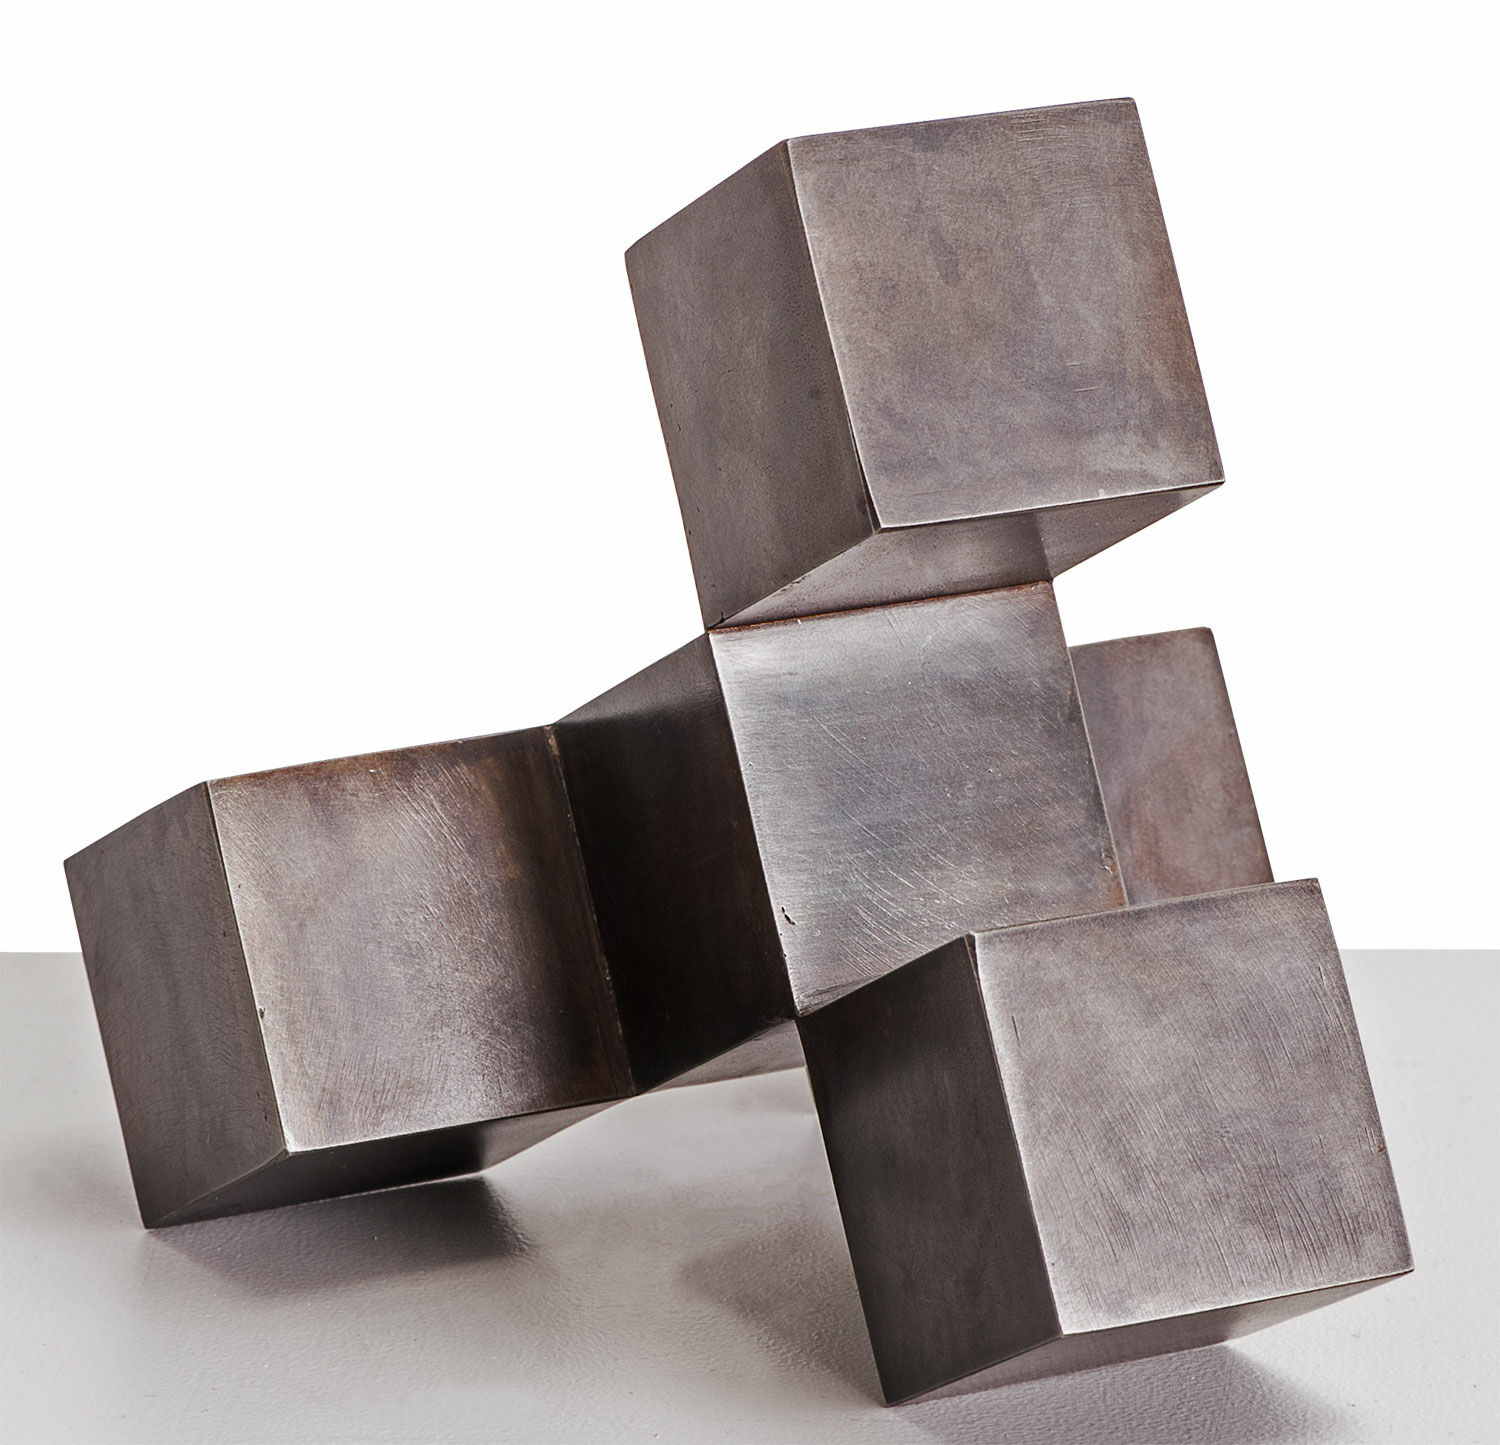 Stalen sculptuur "CUBECUBE" (2010) von Stephan Siebers